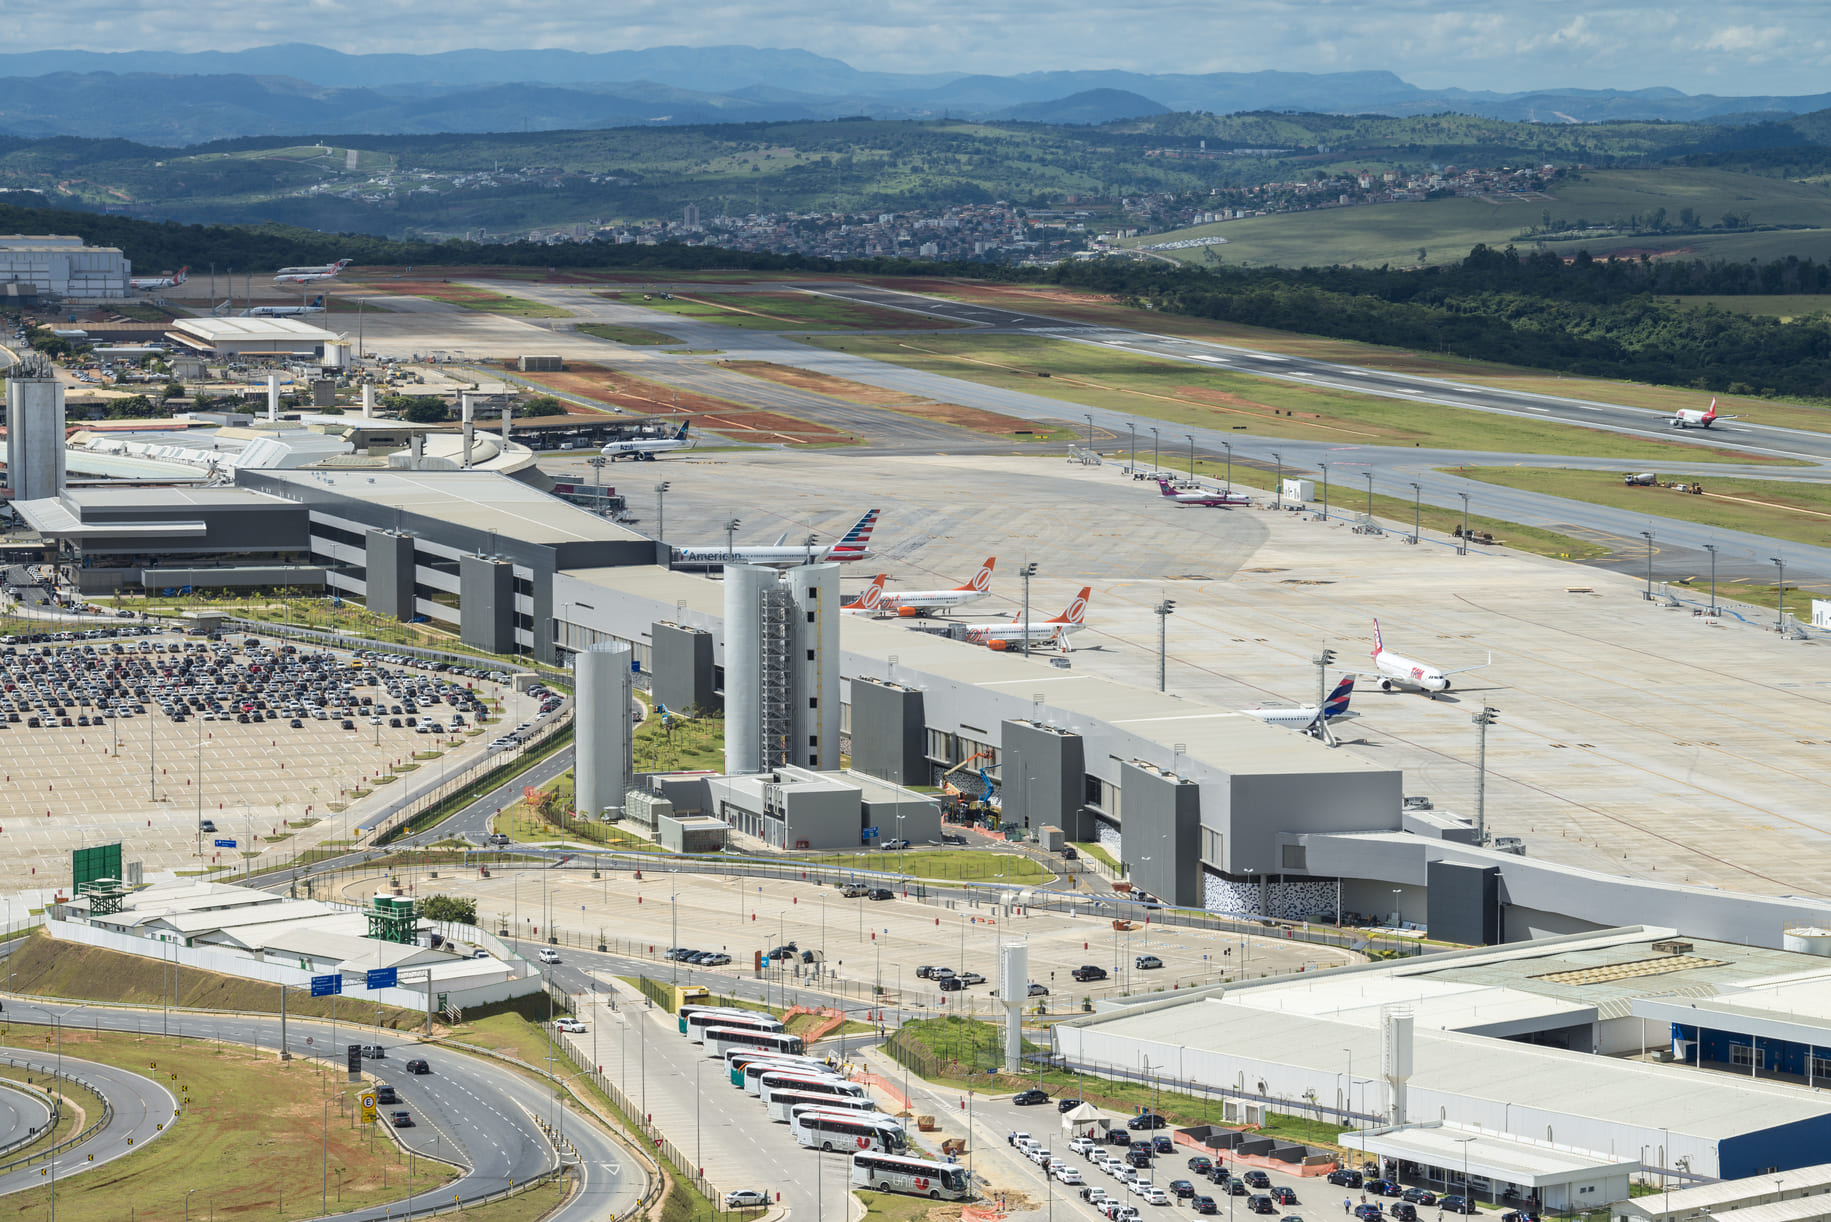 Aeroporto Internacional de Belo Horizonte lança projeto de Centro de Inovação | Foto aeroporto | Conexão123